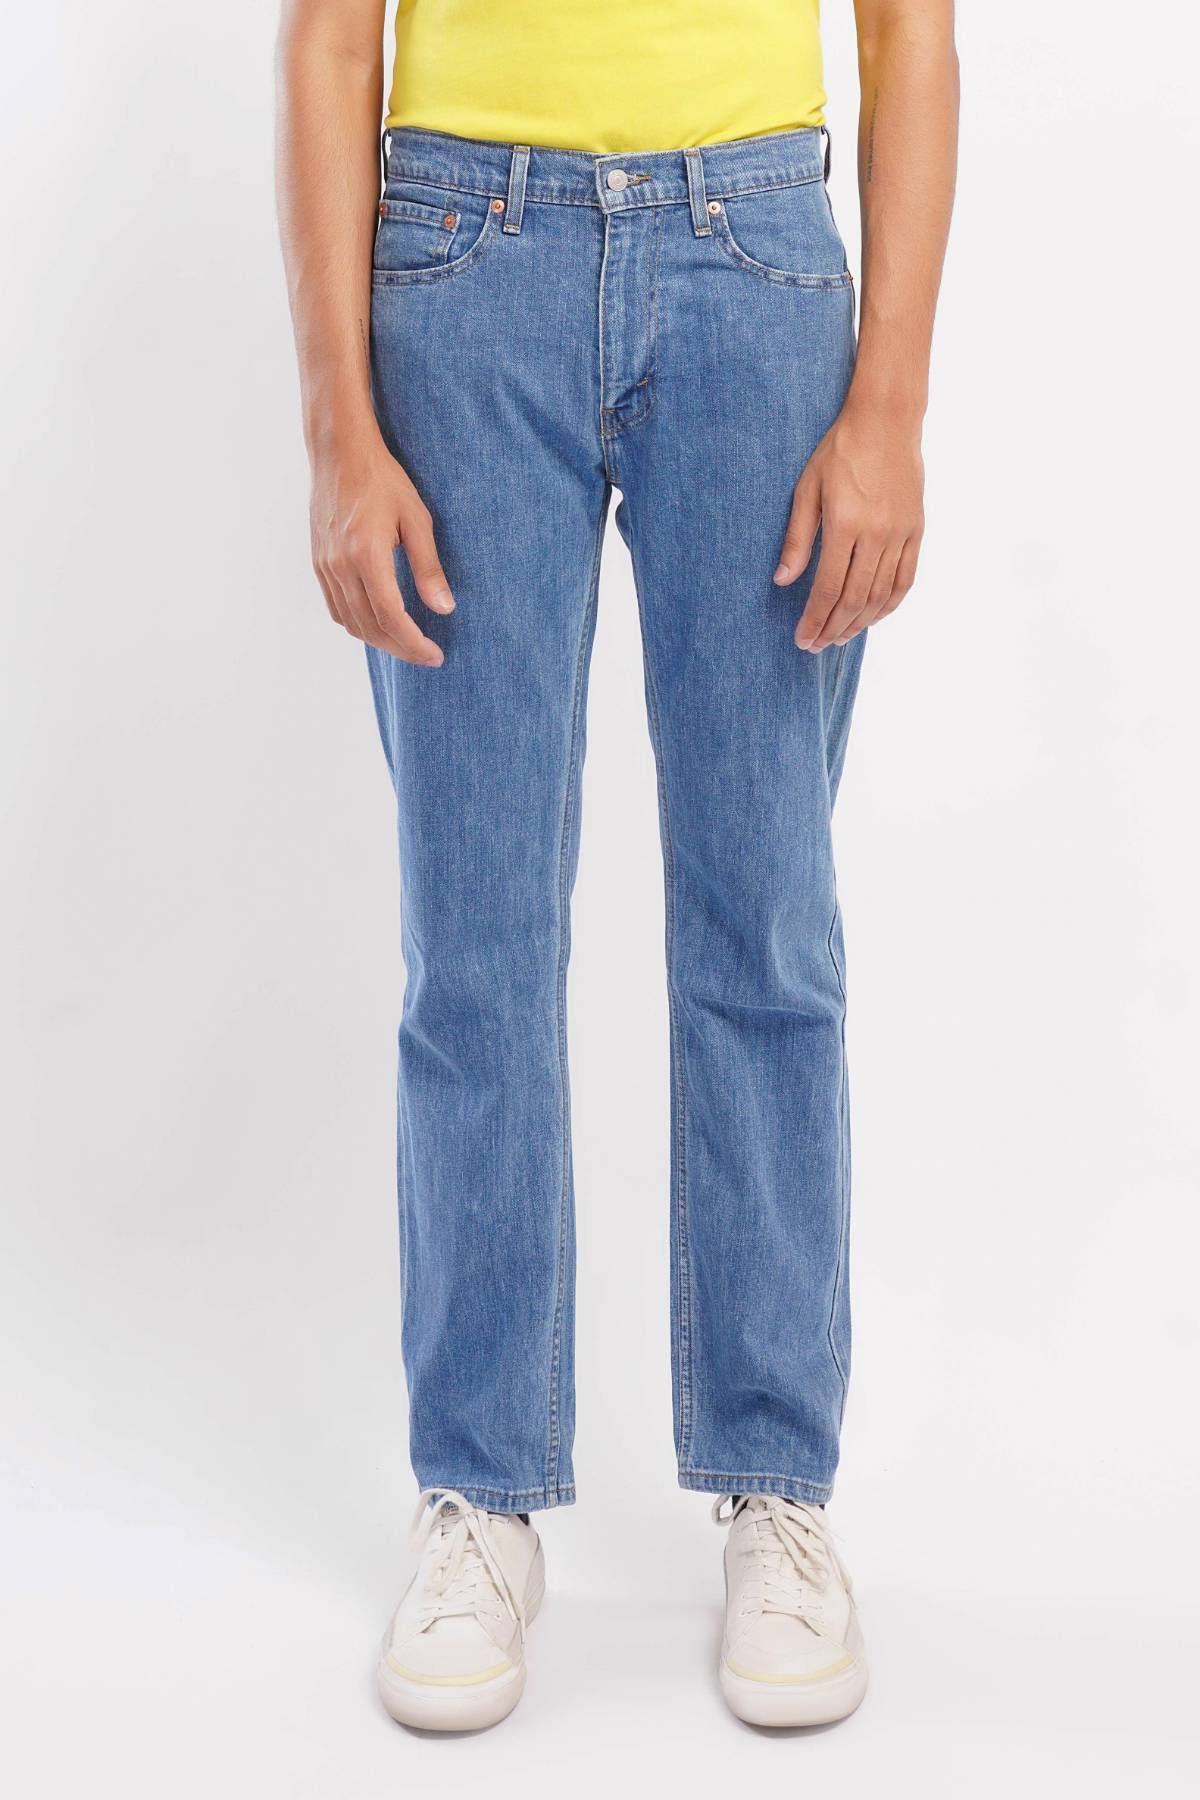 Levi's ® 505 Regular Light Stonewash Pk Blue Men Jeans